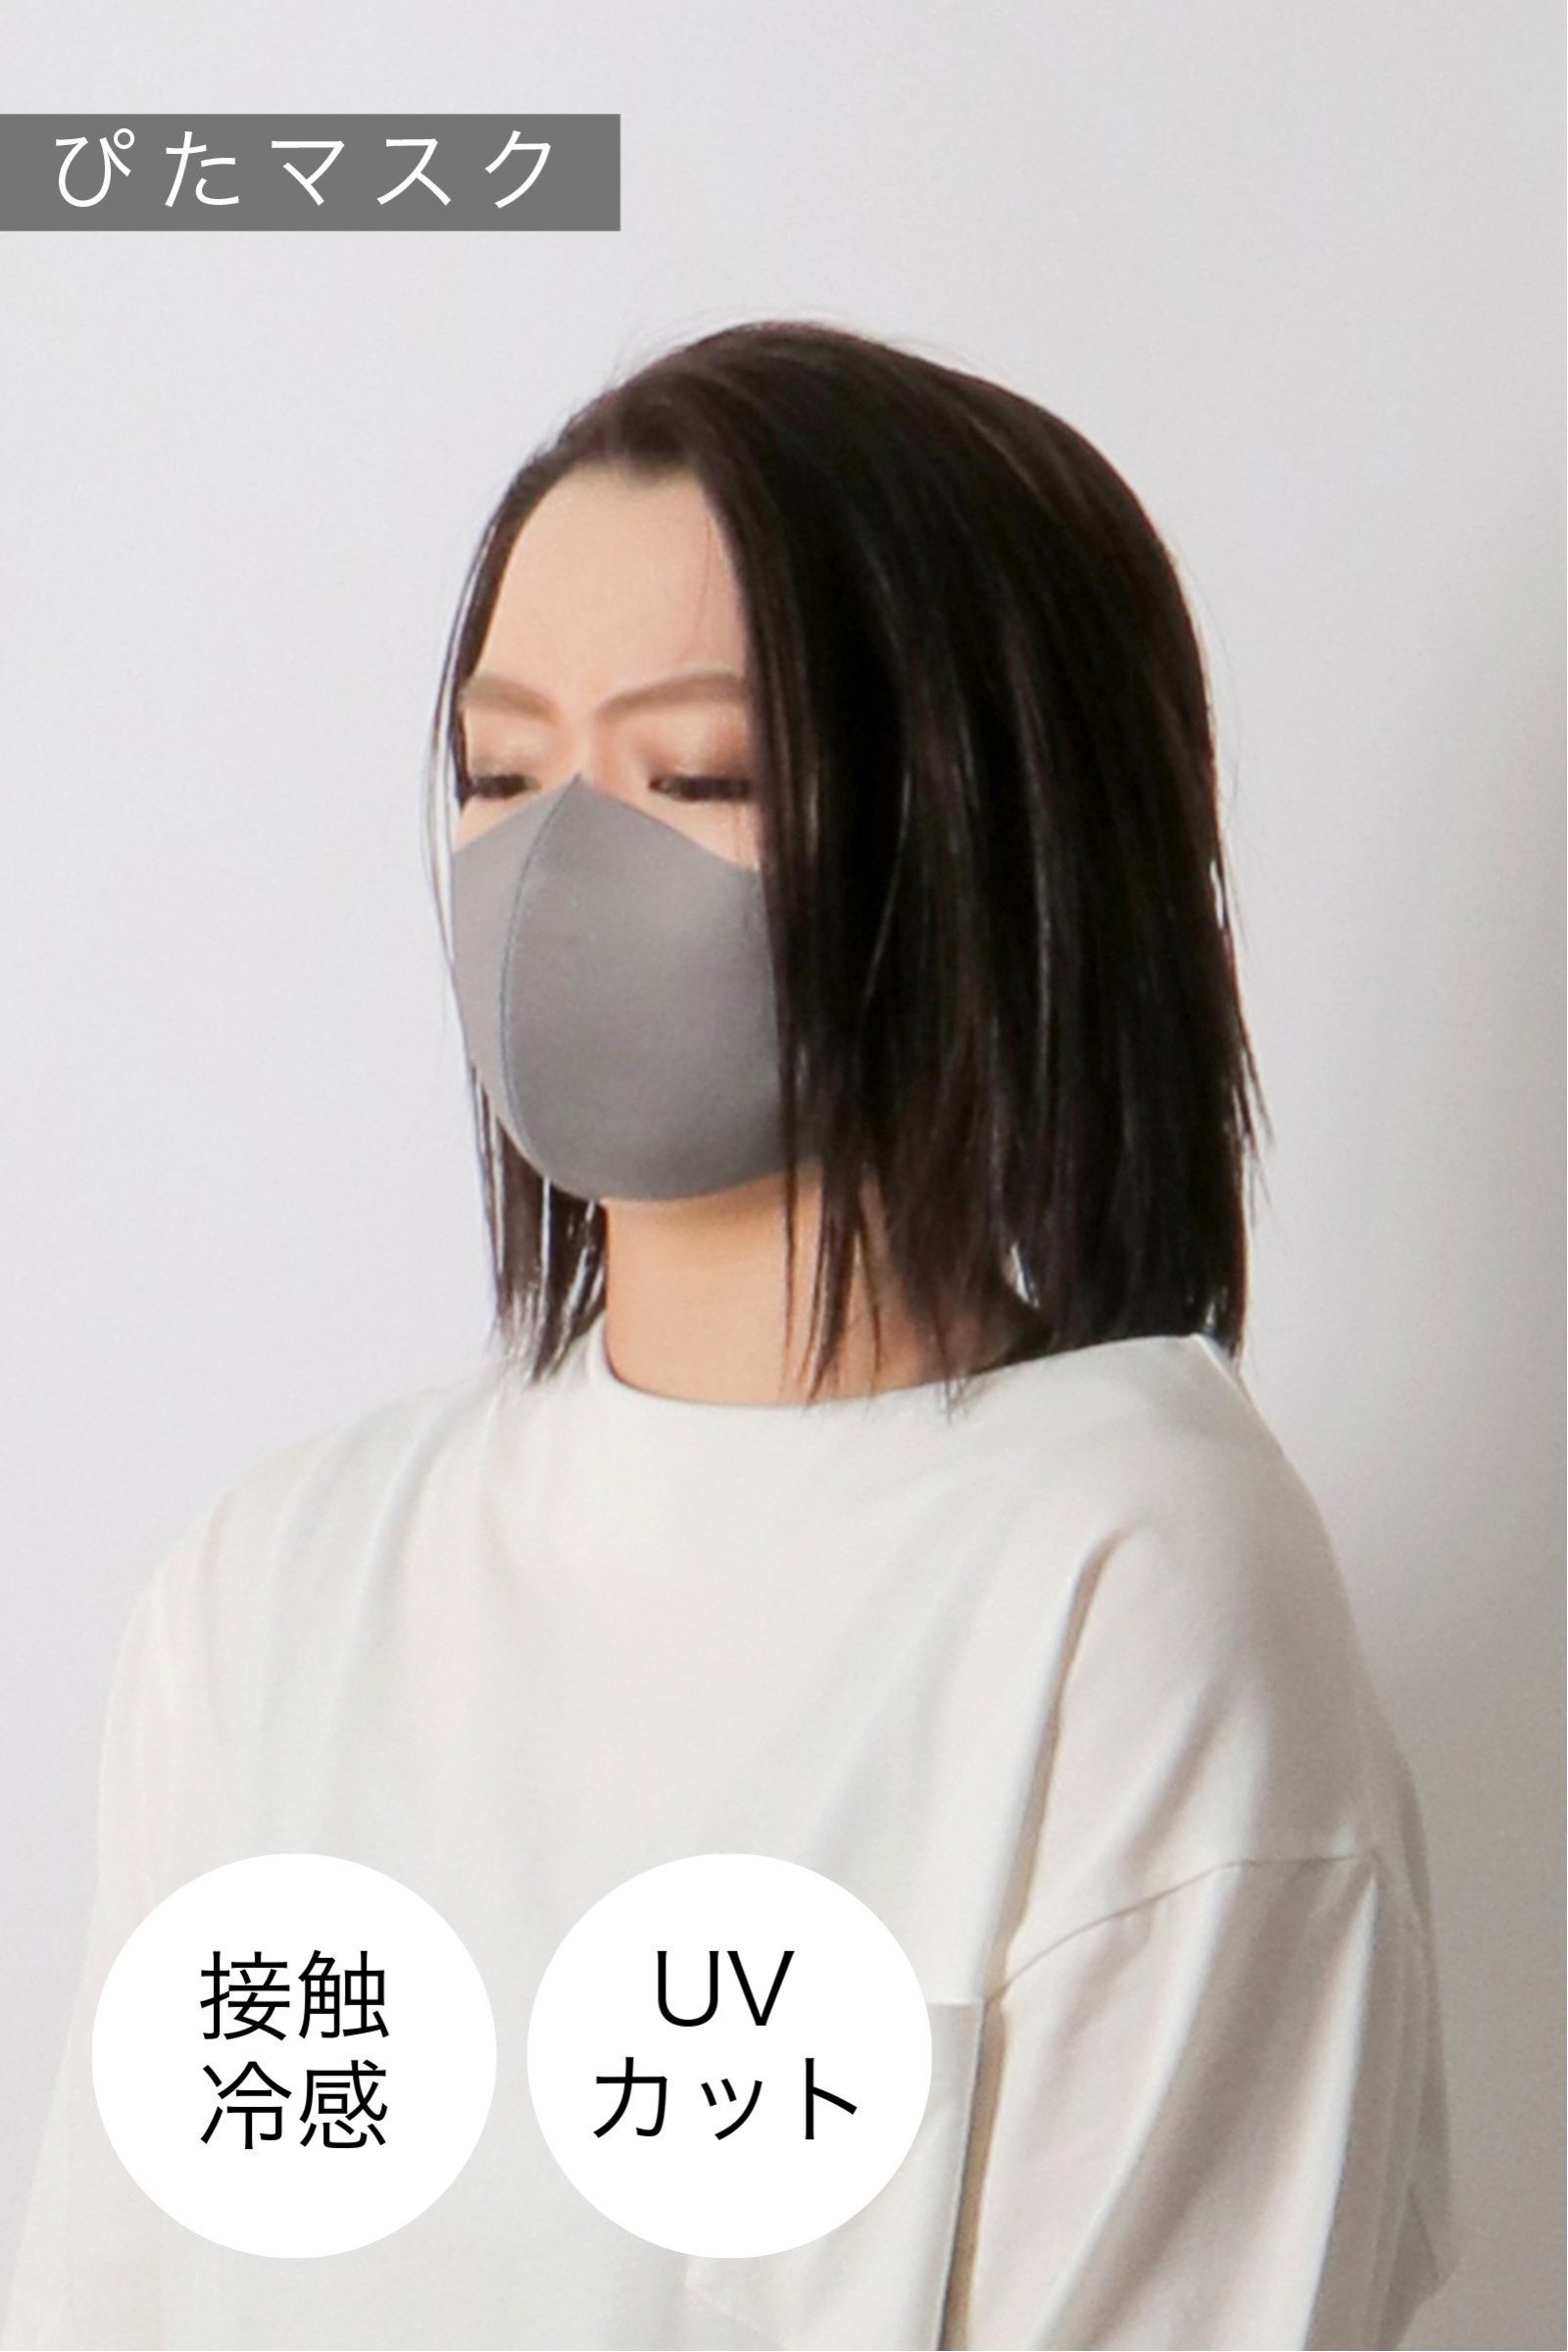 【おとな用】 ぴたマスク(3枚セット)  チャコールグレー